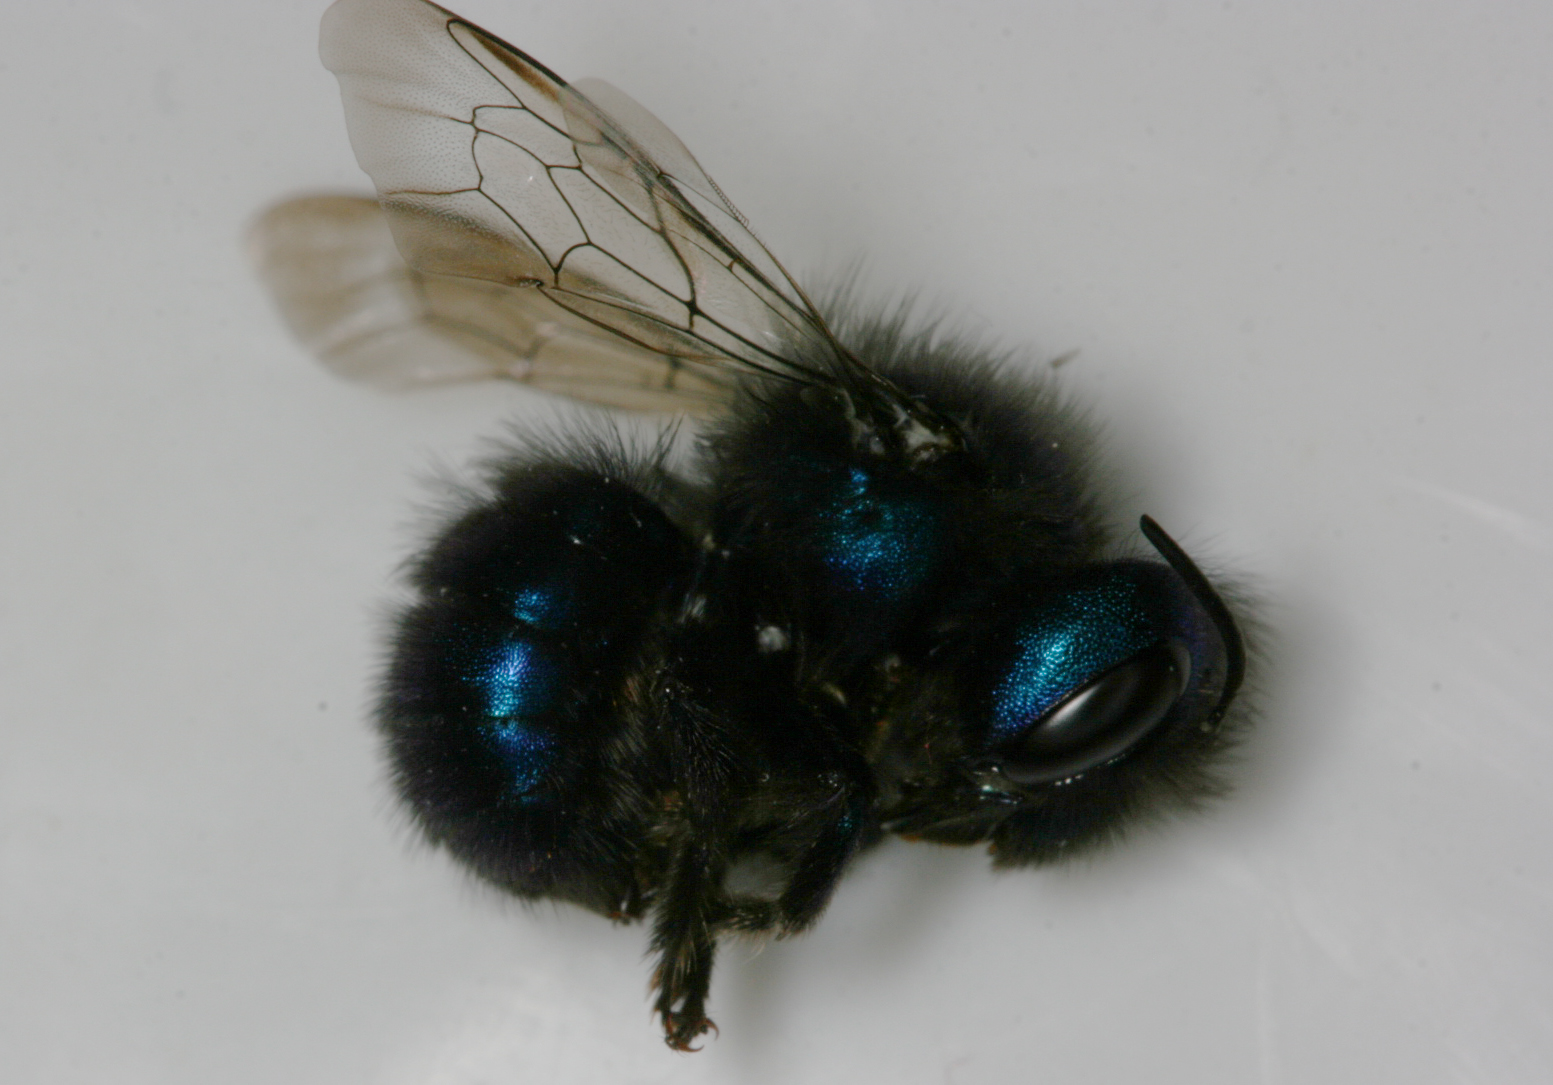 Osmia, a species of mason bee